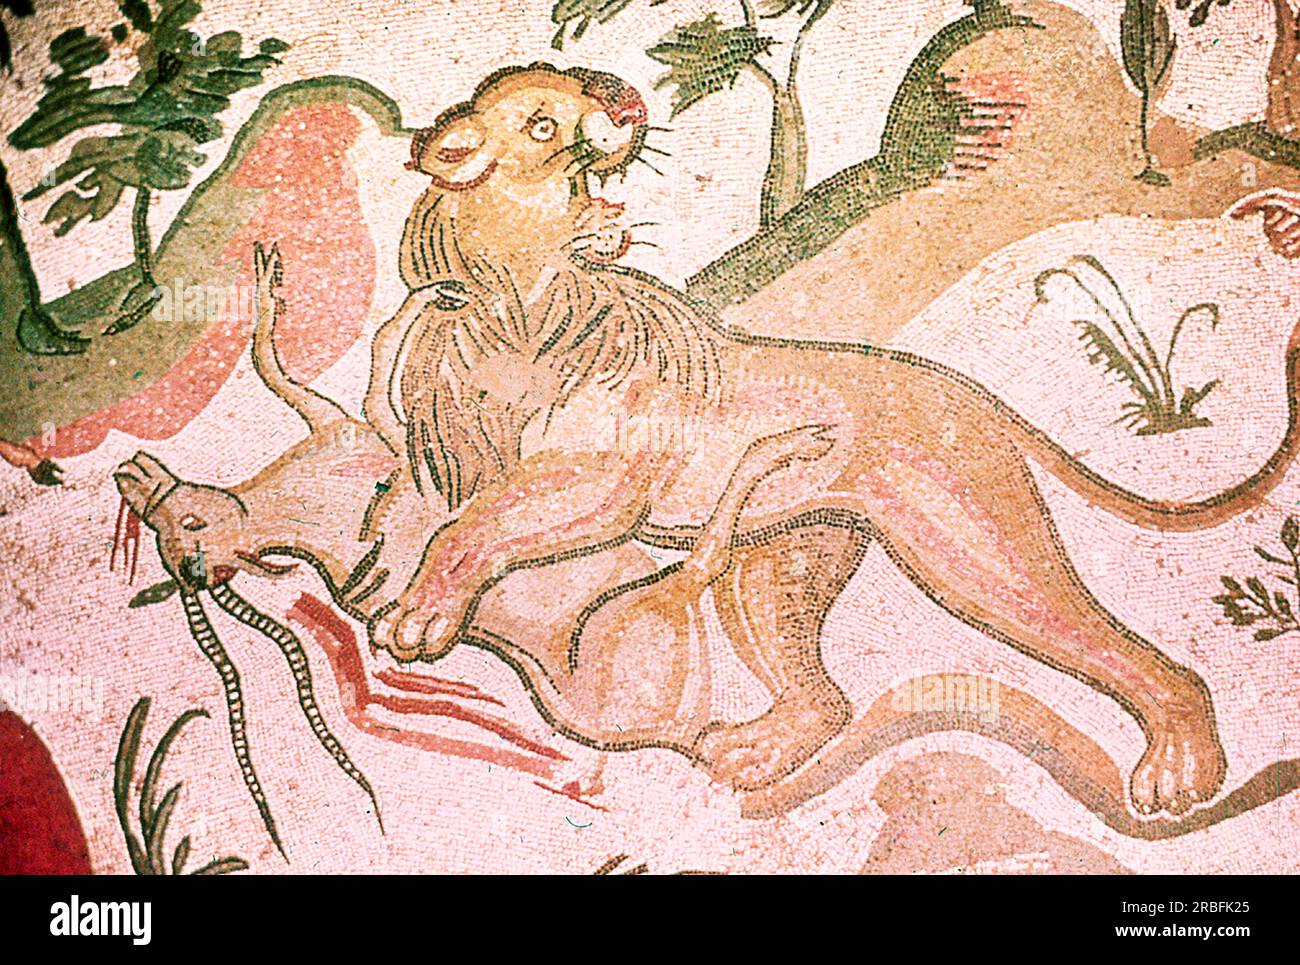 Dieses Foto eines Mosaiks mit einer Jagdszene (ein Löwe, der ein Horntier niederschlägt) wurde im Sommer 1970 auf der Piazza Armerina in Sizilien aufgenommen. Die Piazza Armerina beherbergt die römische Villa del Casale und ihre berühmten Mosaiken, die „besten Mosaike in situ in der römischen Welt“, wie von der UNESCO beschrieben, die sie 1997 in ihre Liste des Weltkulturerbes aufgenommen hat. Villa Romana war eine üppige Patrizier-Residenz, die im Zentrum eines riesigen Latifundiums (Landwirtschaftsgelände) am Ende des 4. Jahrhunderts n. Chr. erbaut wurde. Es wird angenommen, dass es einem Mitglied der römischen Senatorenaristokratie gehörte, der eingetauscht hat Stockfoto